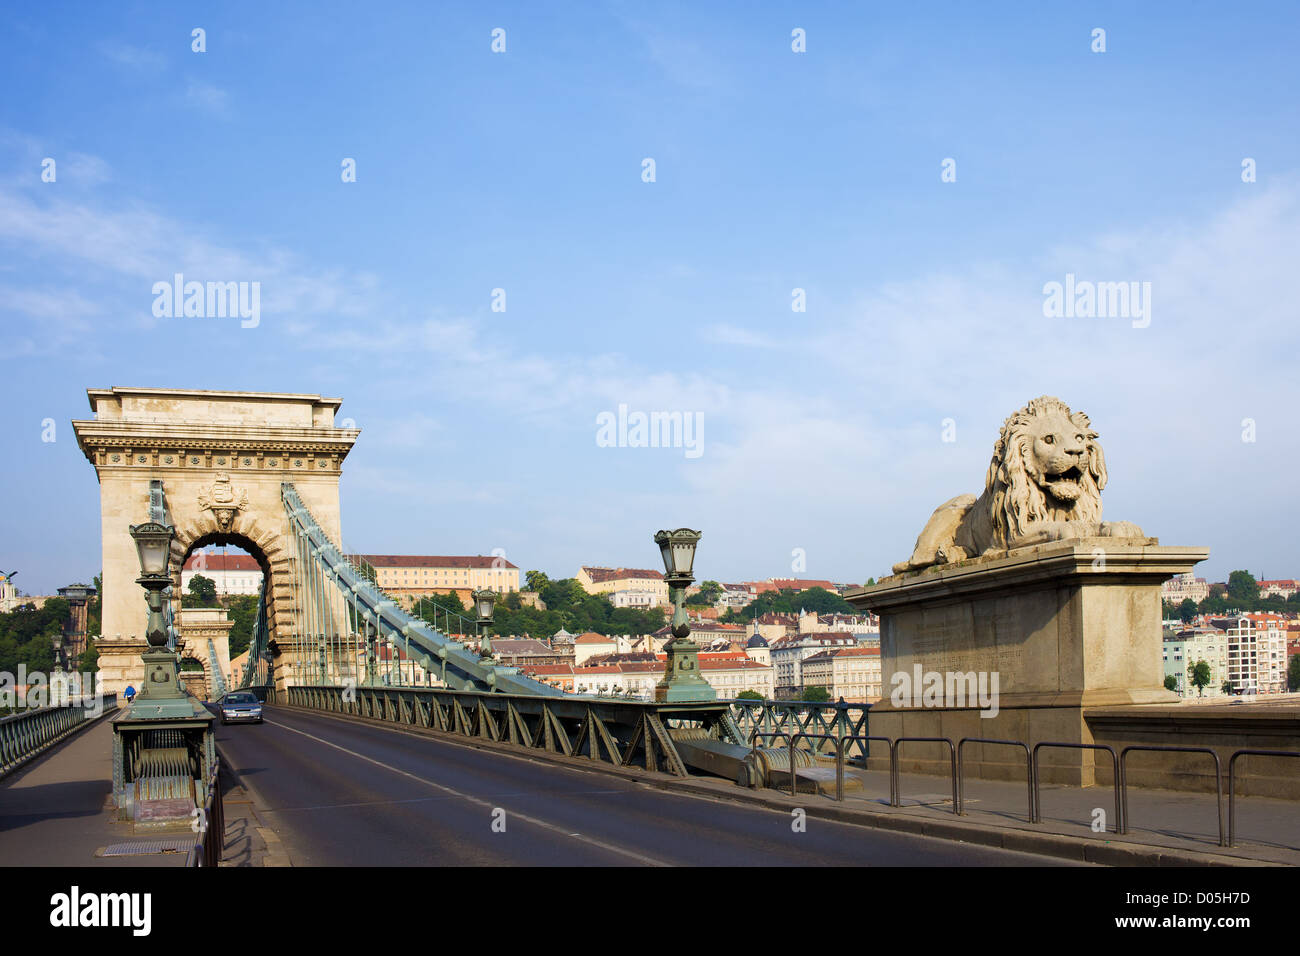 Stadt Budapest städtische Landschaft, Straße auf der Széchenyi Kettenbrücke (ungarisch: Szechenyi Lanchid), Ungarn. Stockfoto